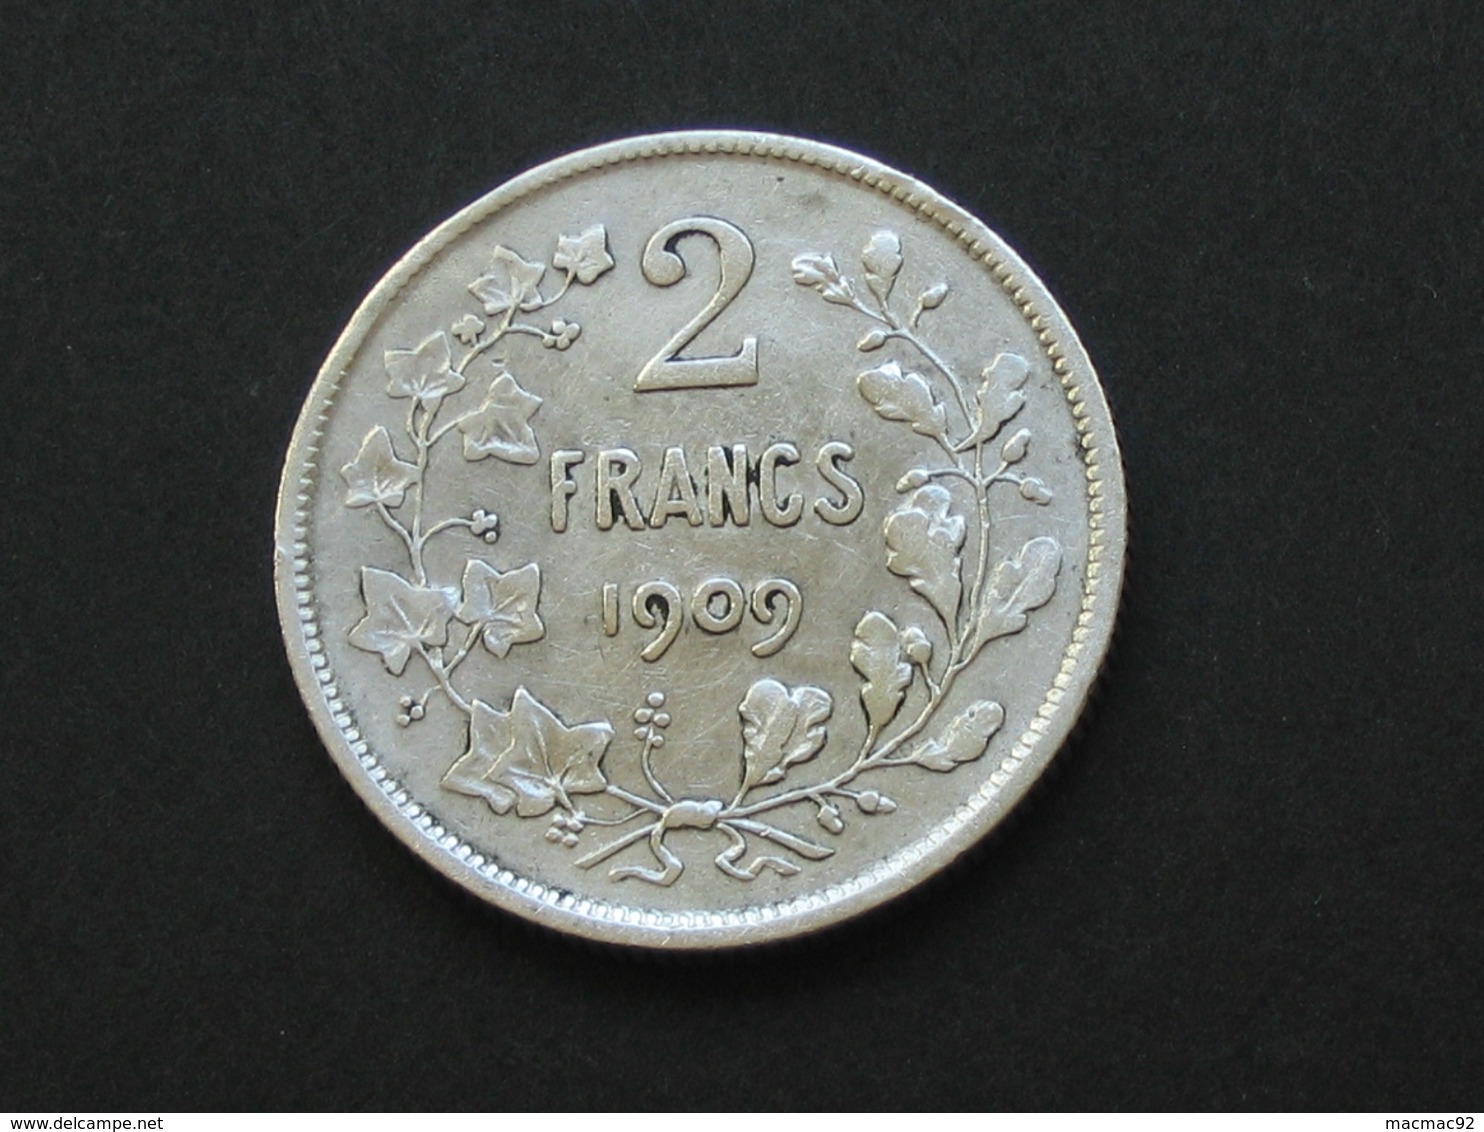 2 Francs 1909 - Argent - BELGIQUE - BELGIE - Léopold II Roi Des Belges **** EN ACHAT IMMEDIAT **** - 2 Francs